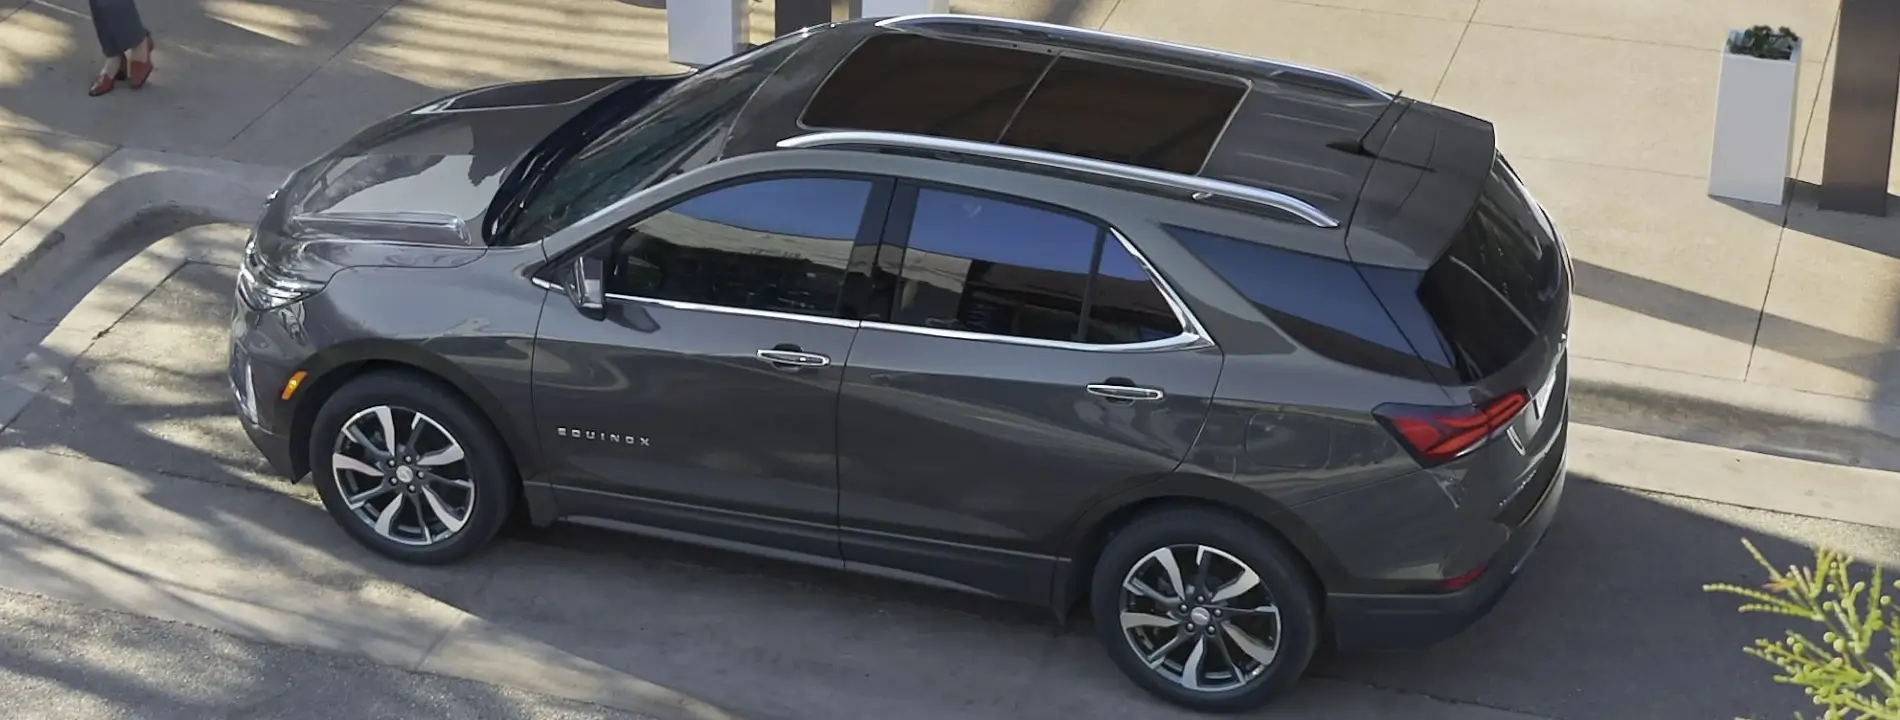 Impressionante visual do Chevrolet SUV Equinox 2022.